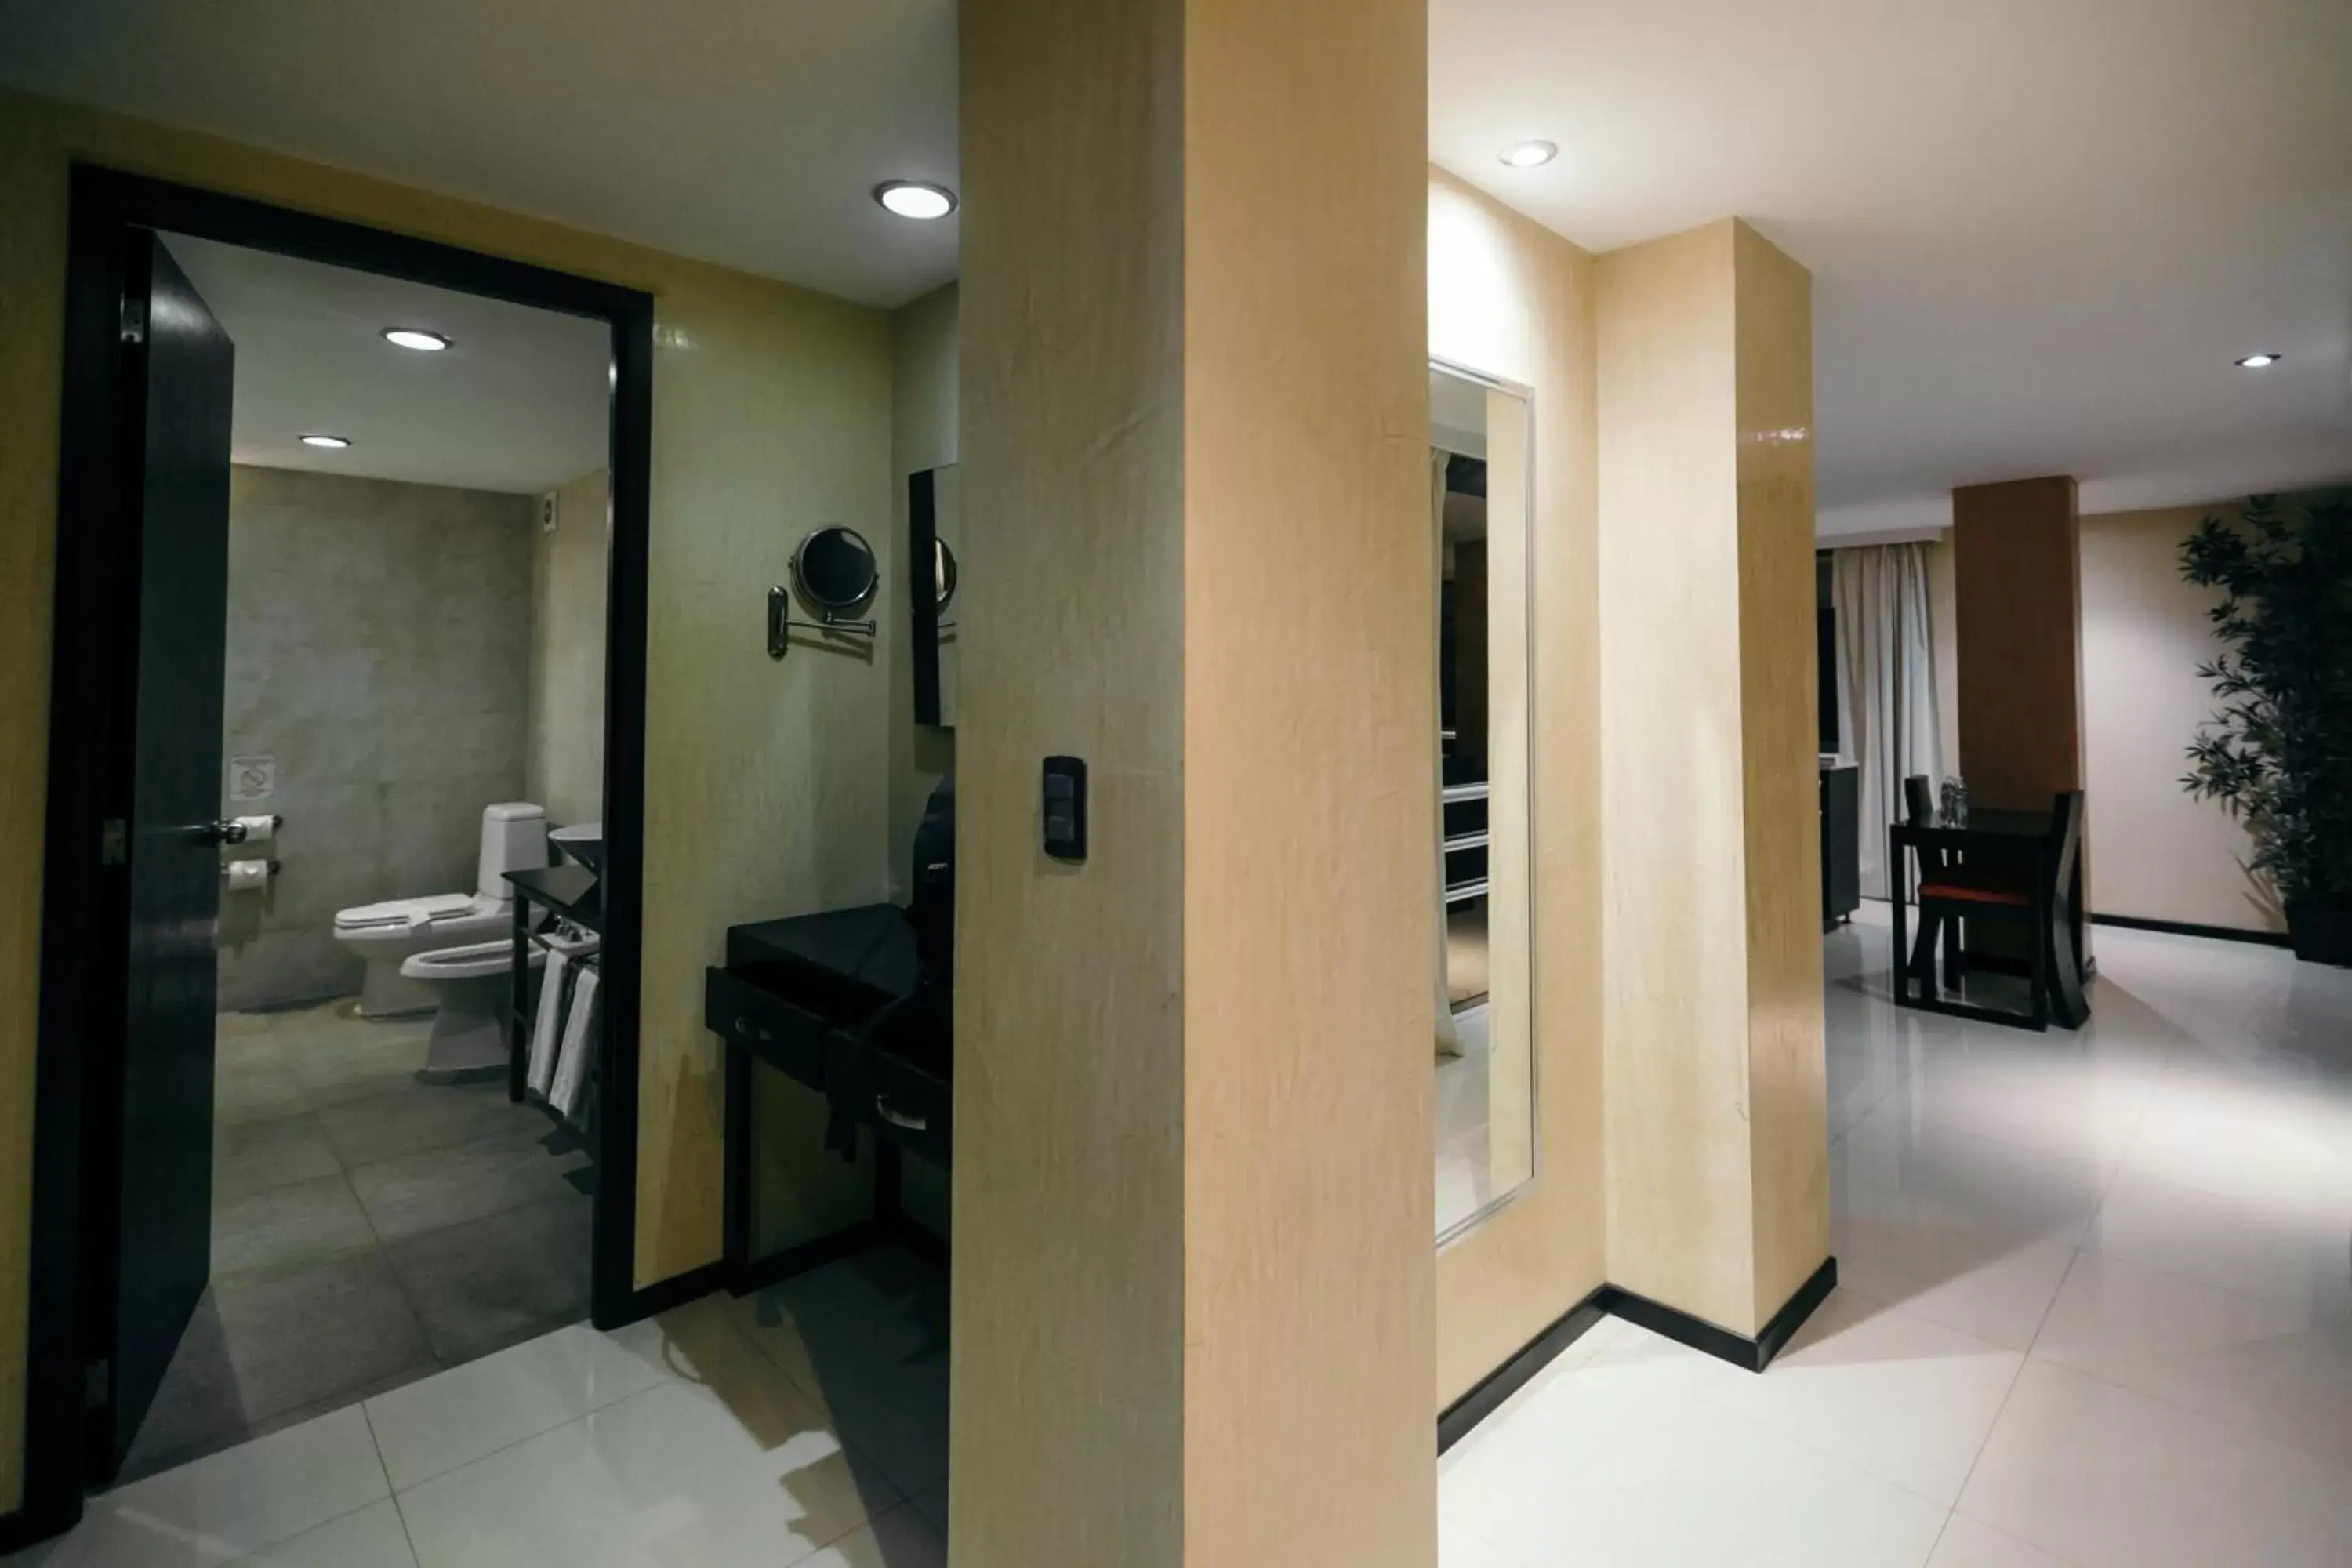 Photo of the whole room, Bathroom in Hotel El Español Paseo de Montejo